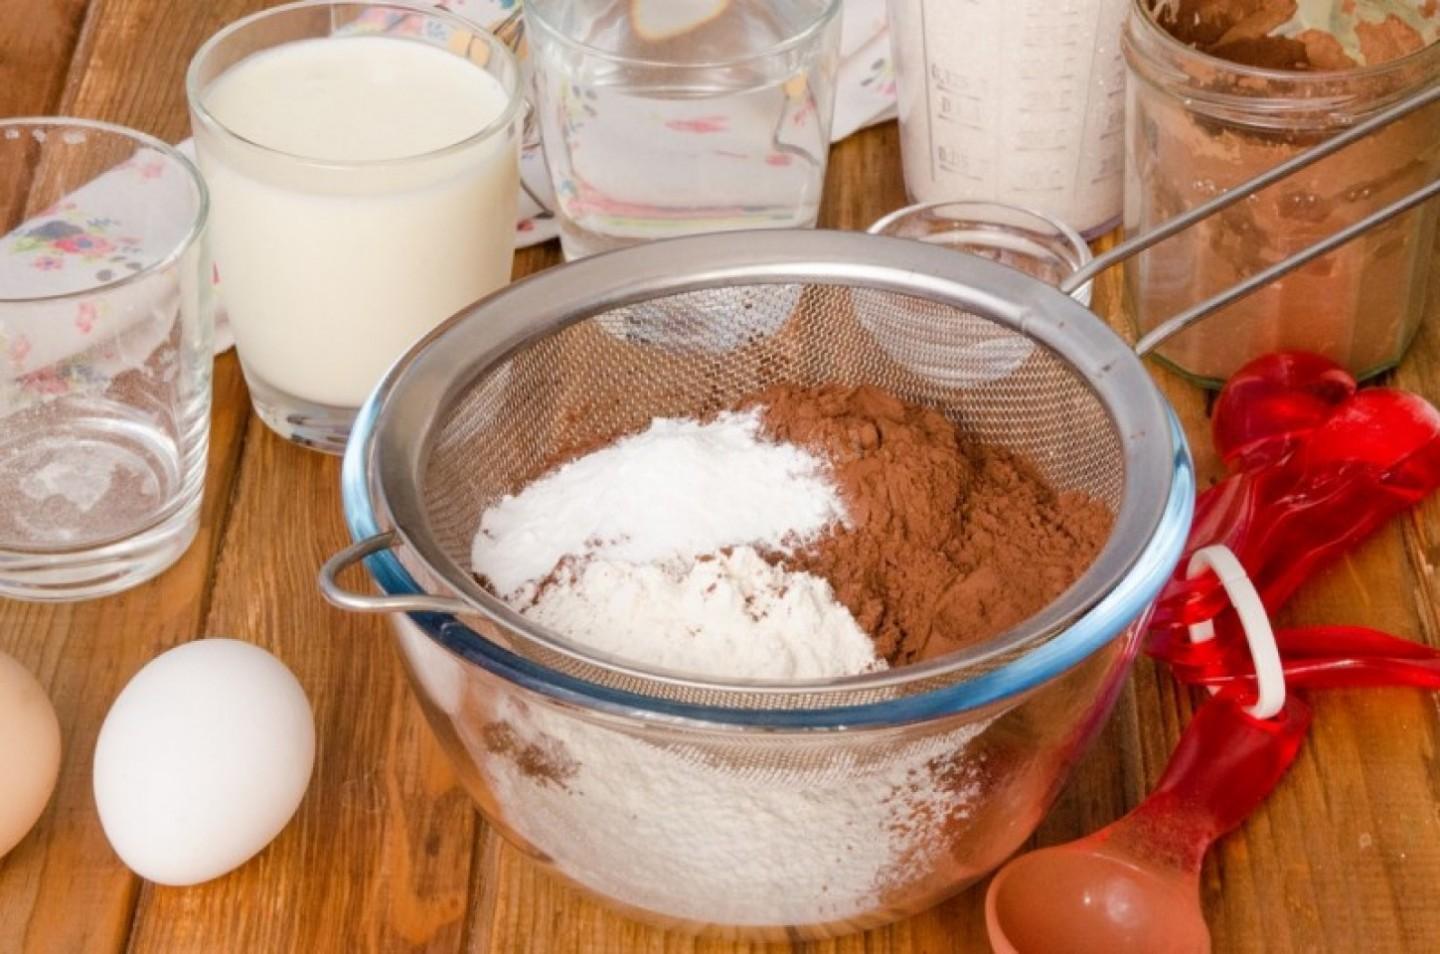 Кефир яйцо сахар мука сода. Ингредиенты для шоколадного бисквита. Мука для бисквита. Мука молоко яйца сахар. Мука сода яйца и сахар.